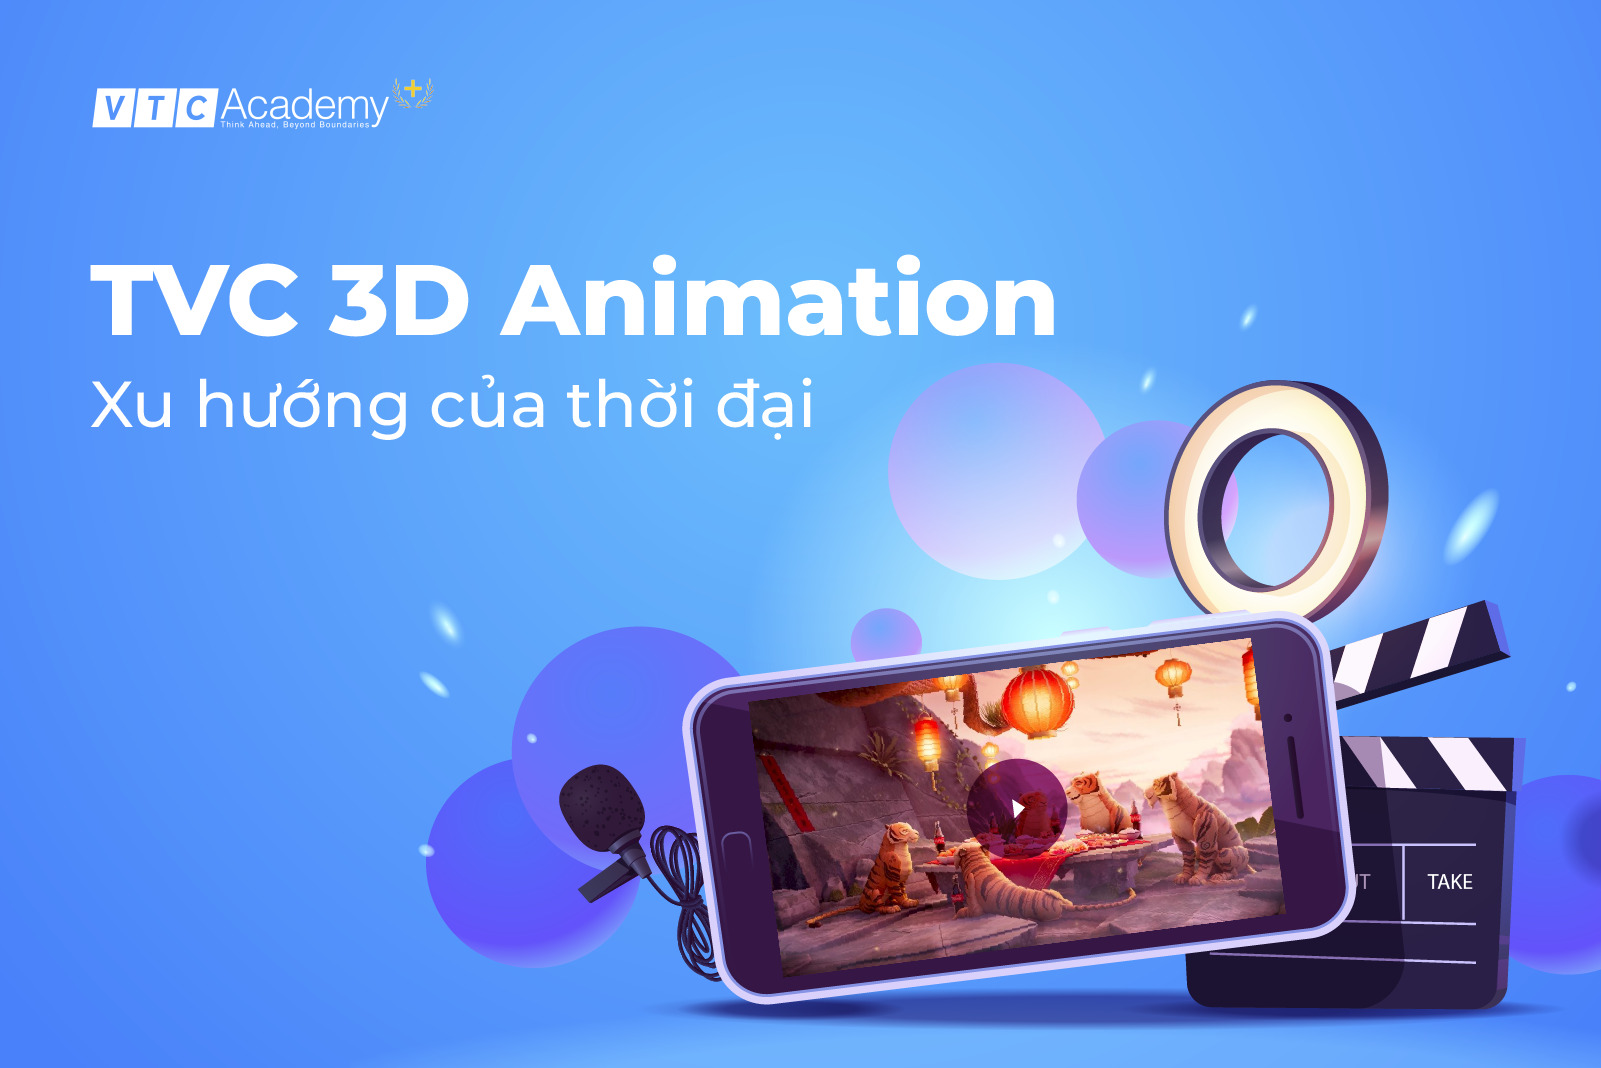 TVC 3D Animation – Xu hướng của thời đại mới